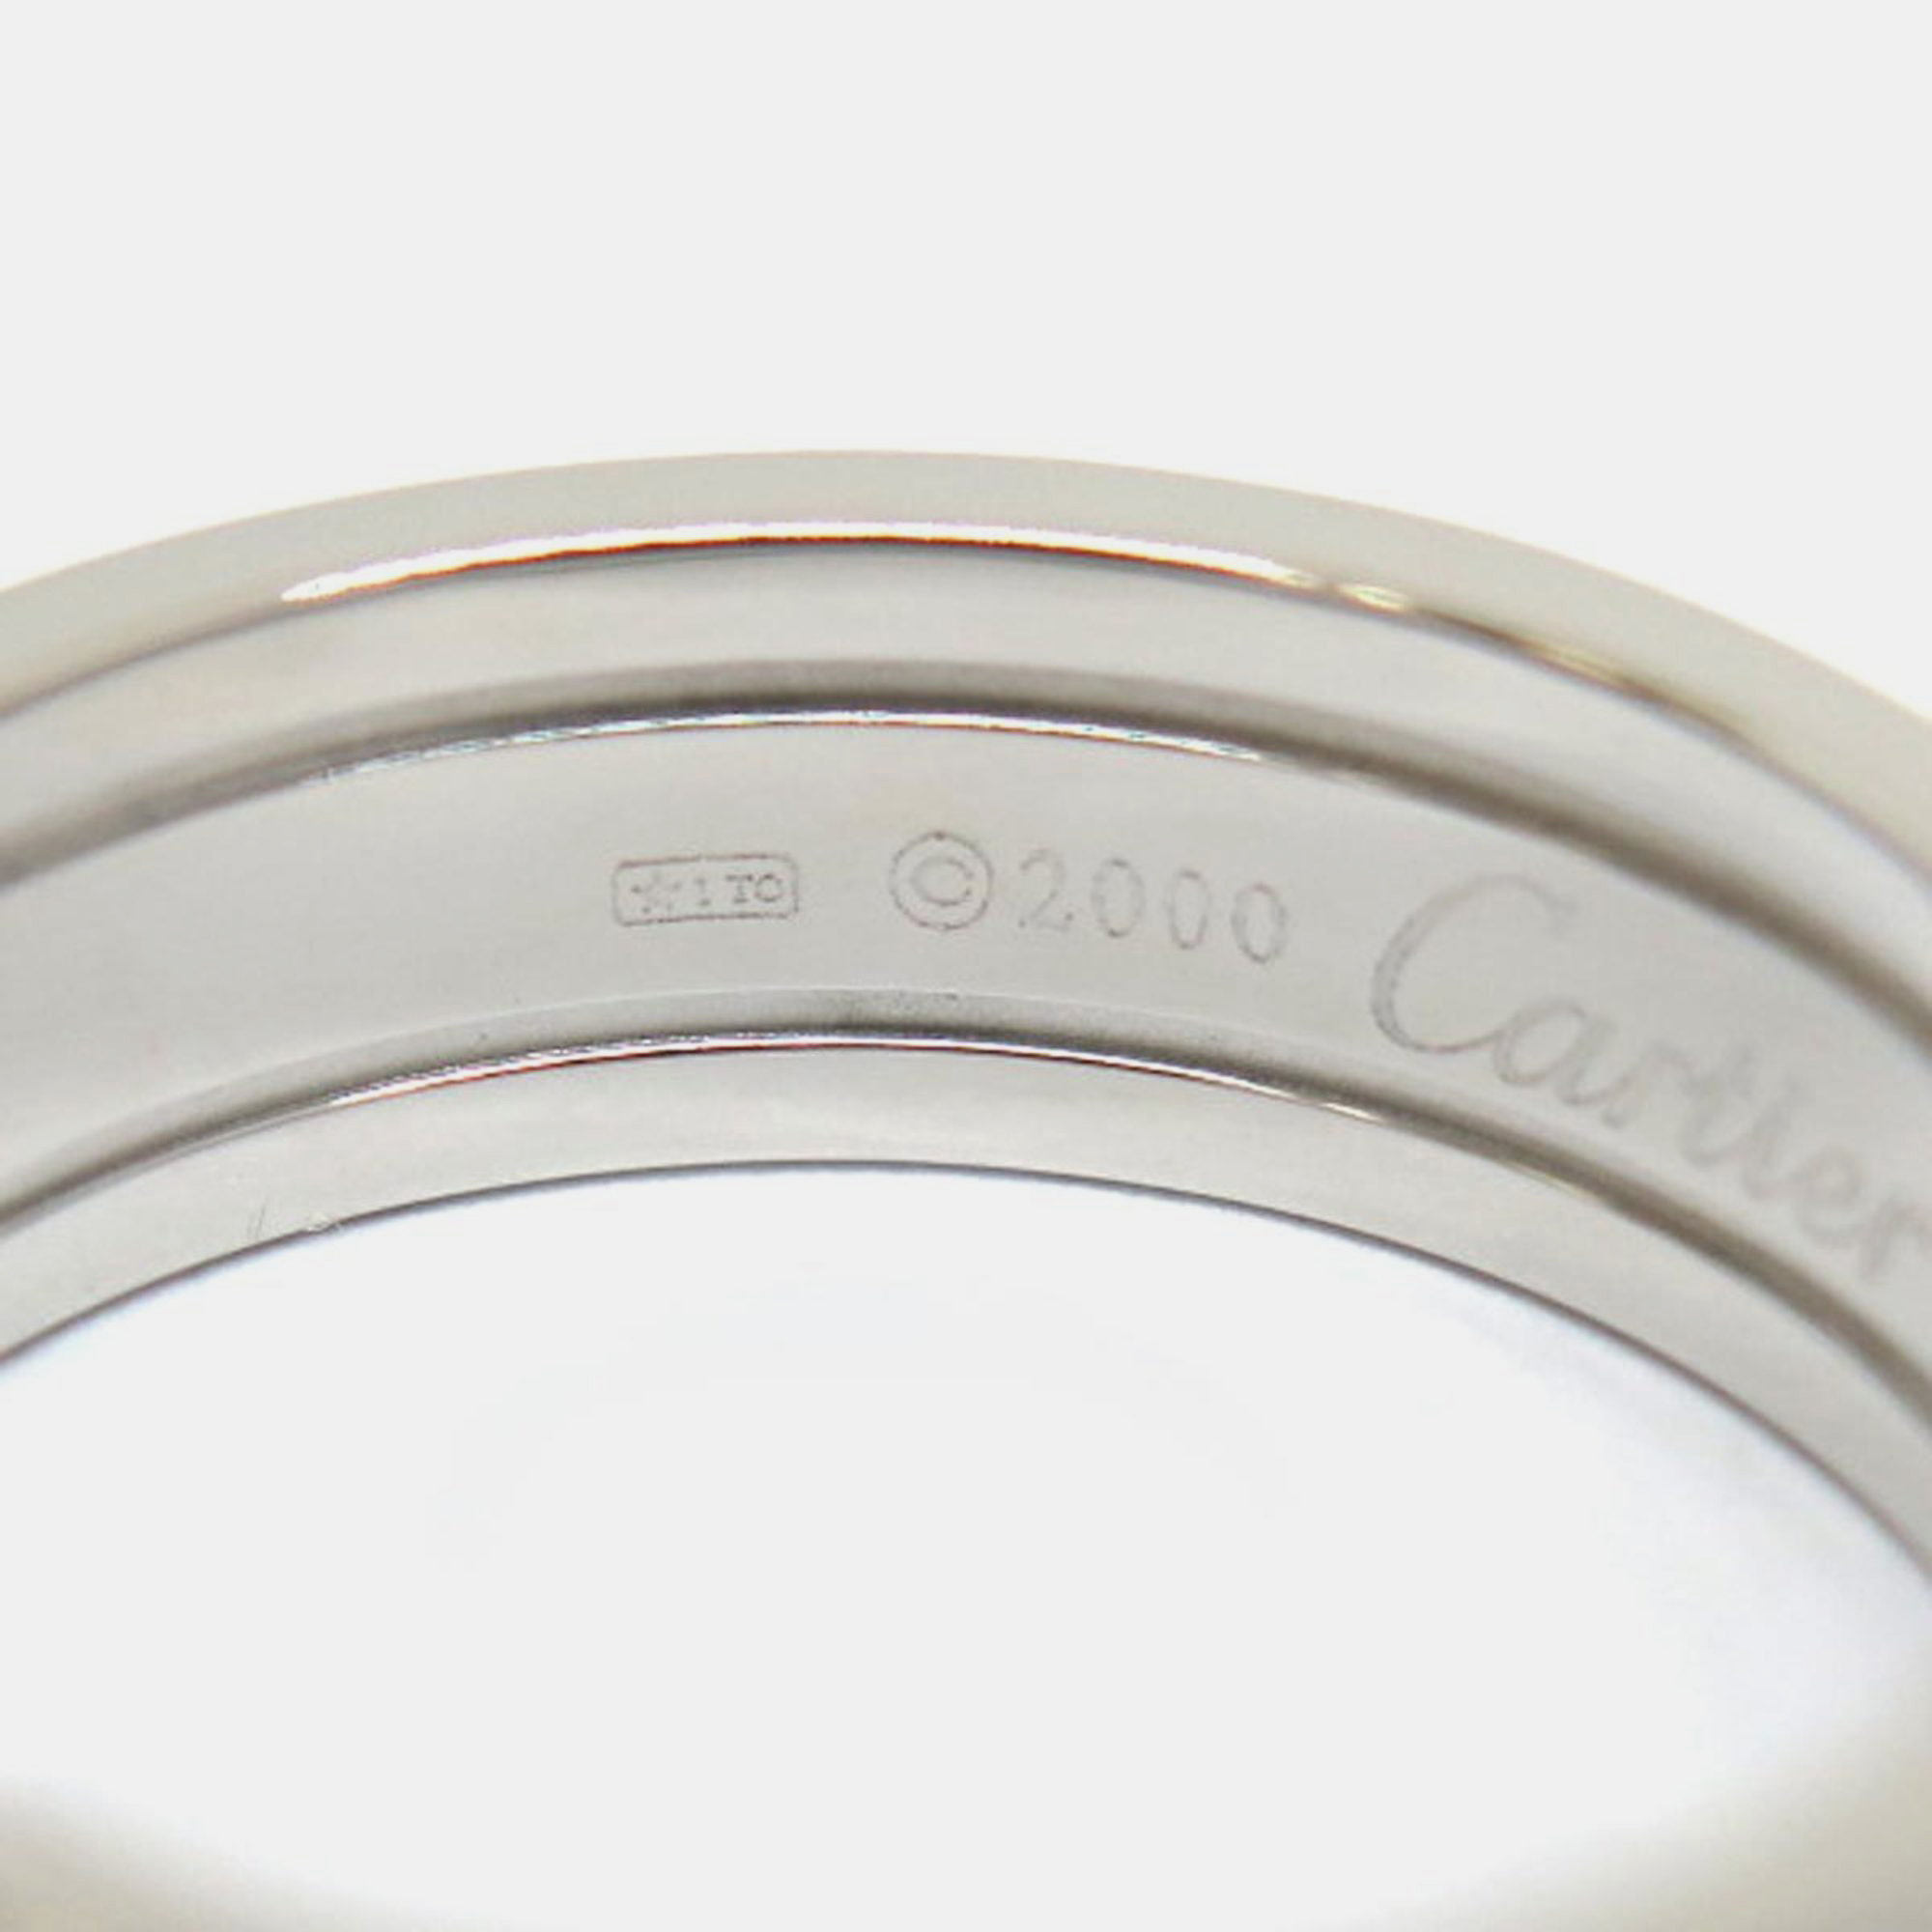 Cartier Double C 18K White Gold Ring EU 59